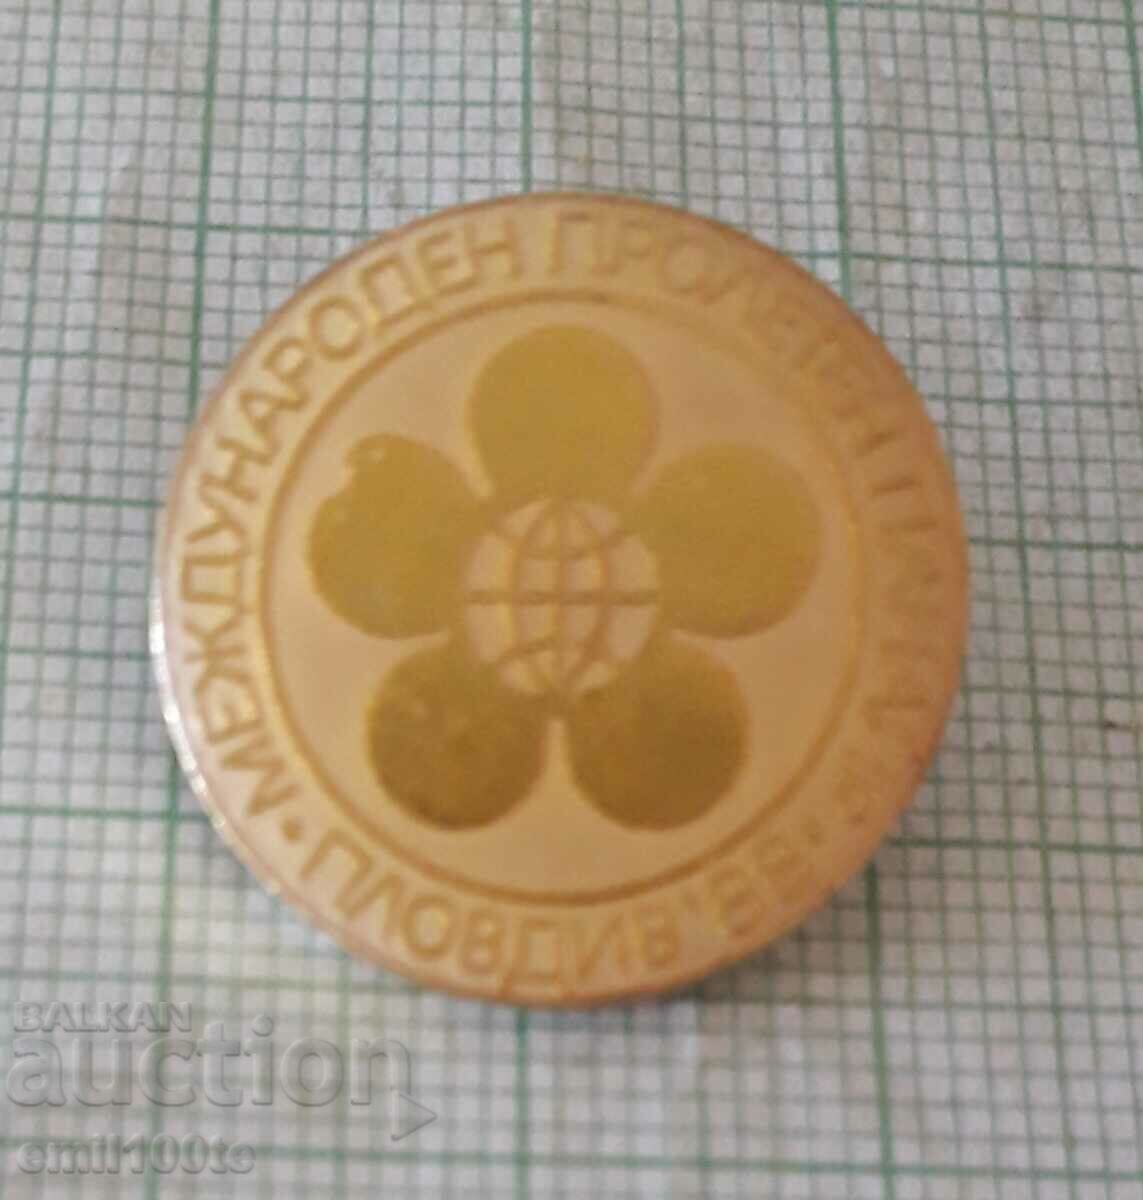 Badge - International Technical Fair Plovdiv 1988